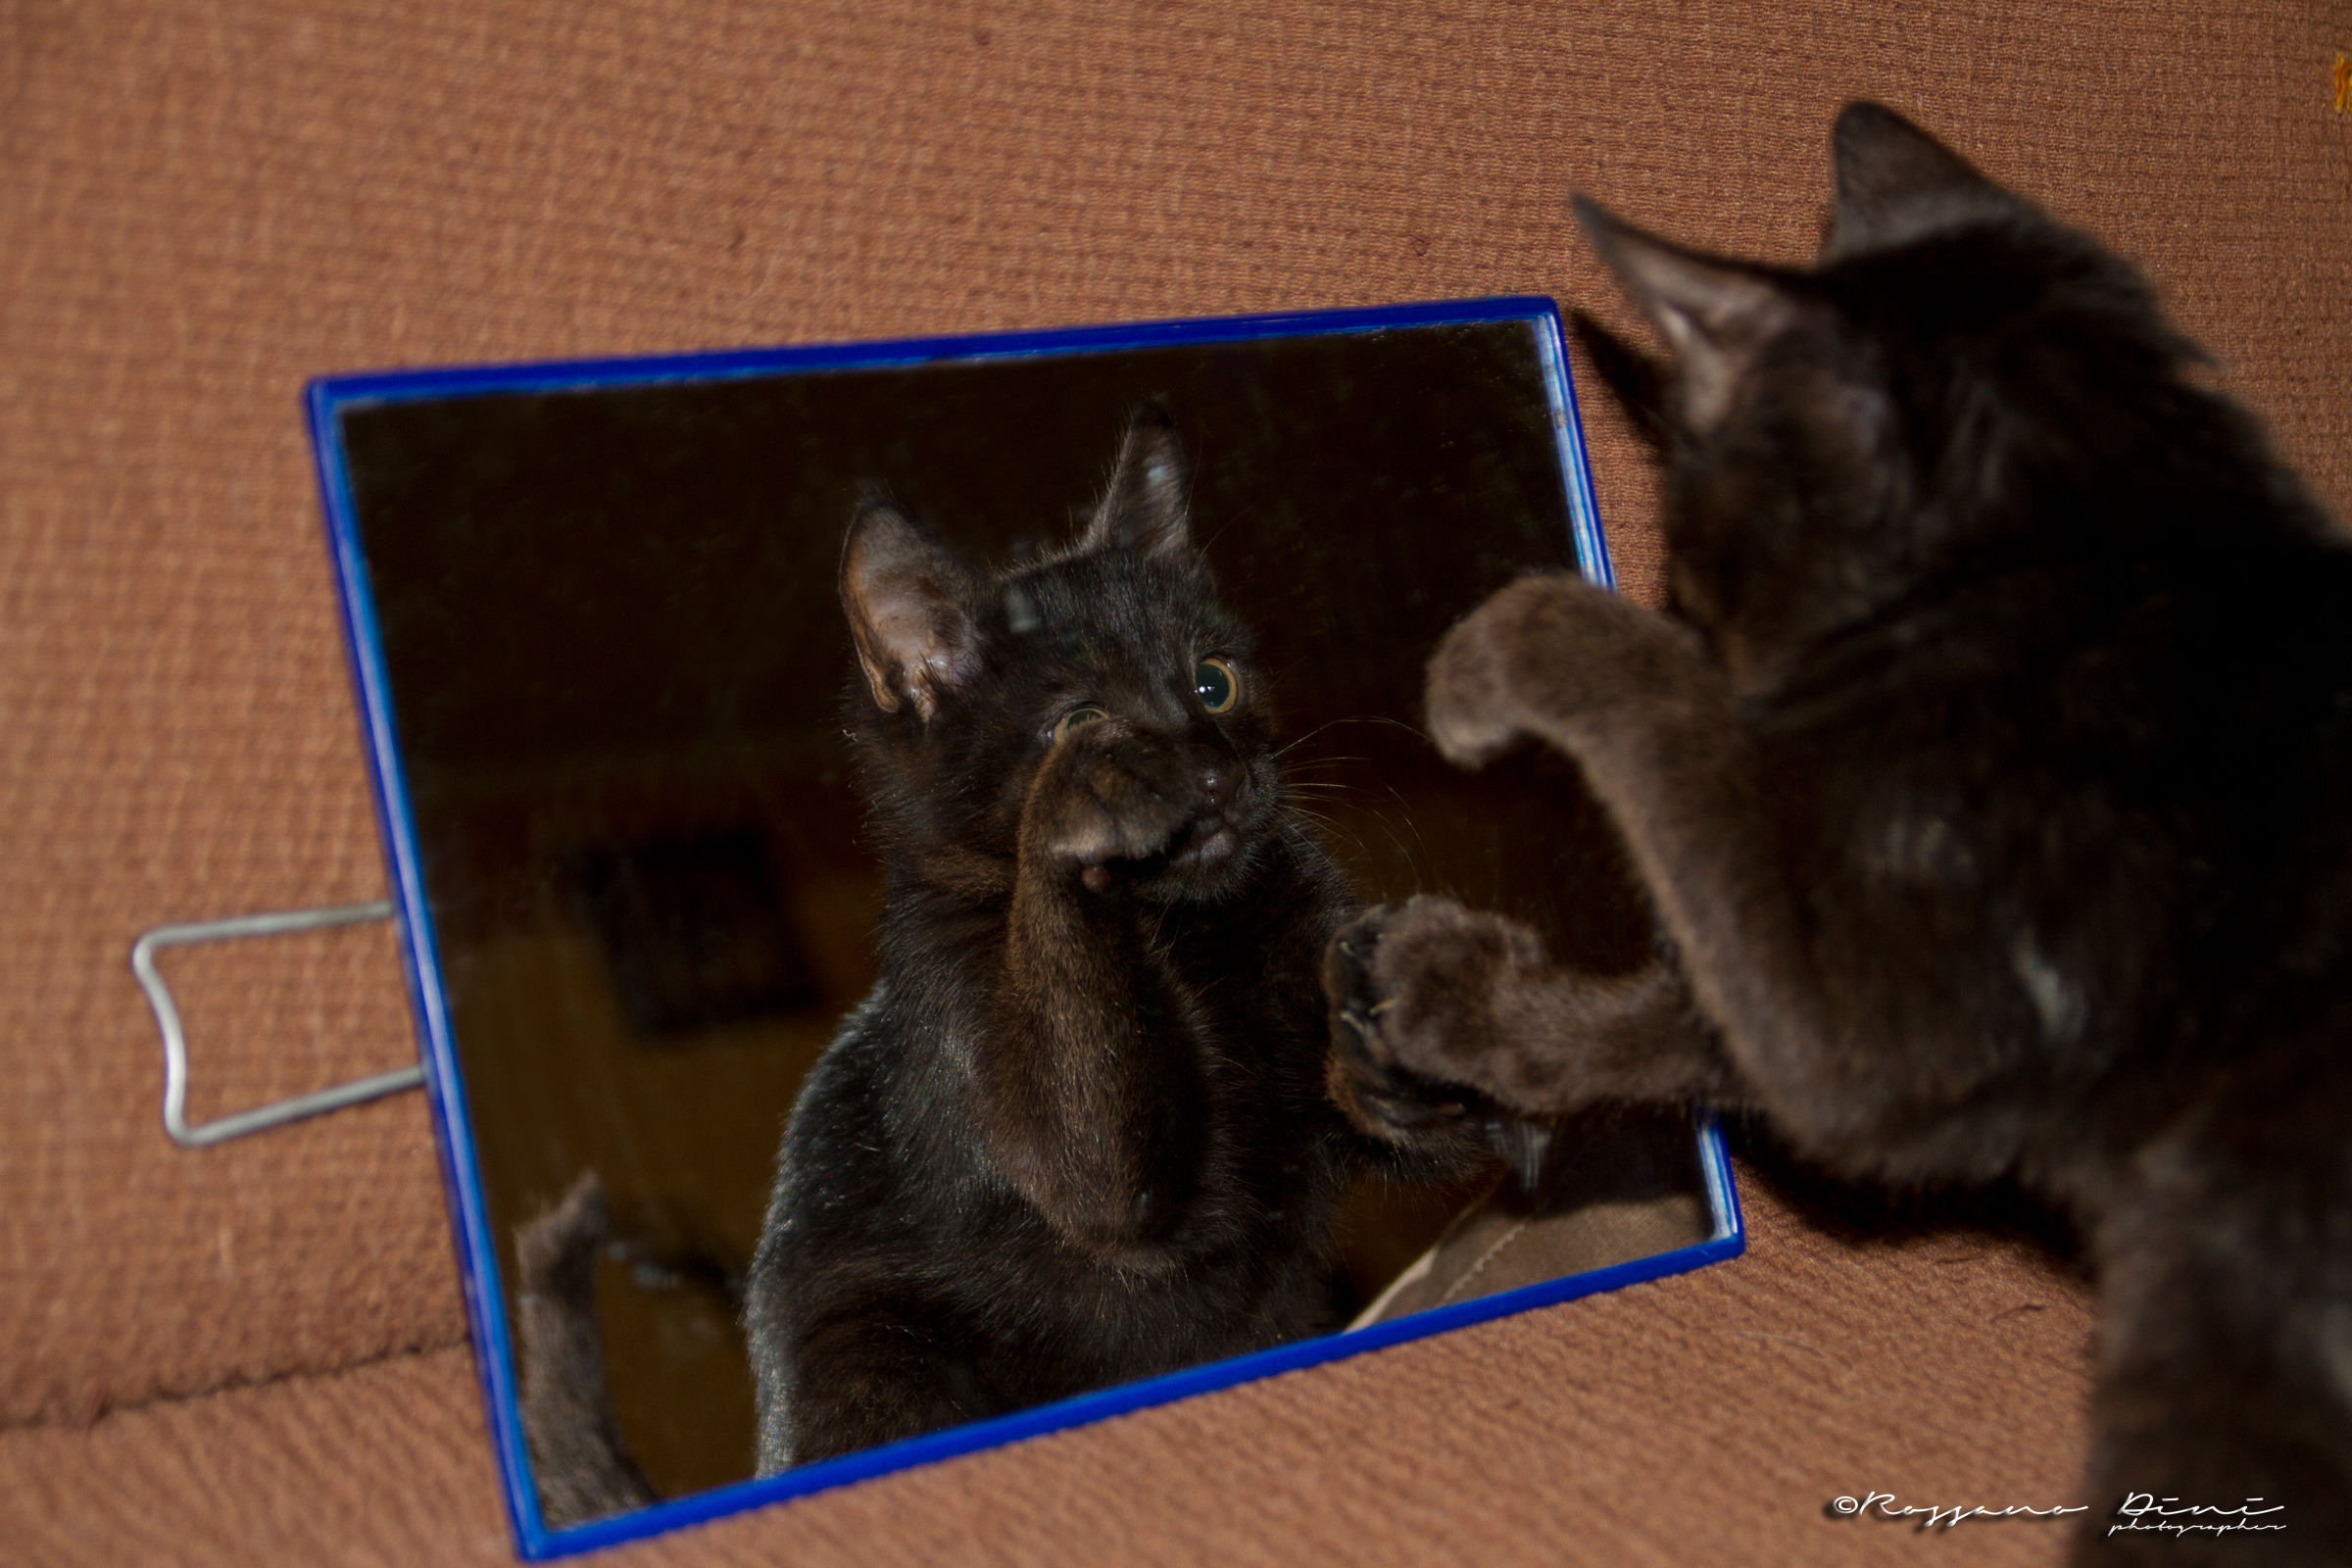 Zorro, "I present the mirror" 3...